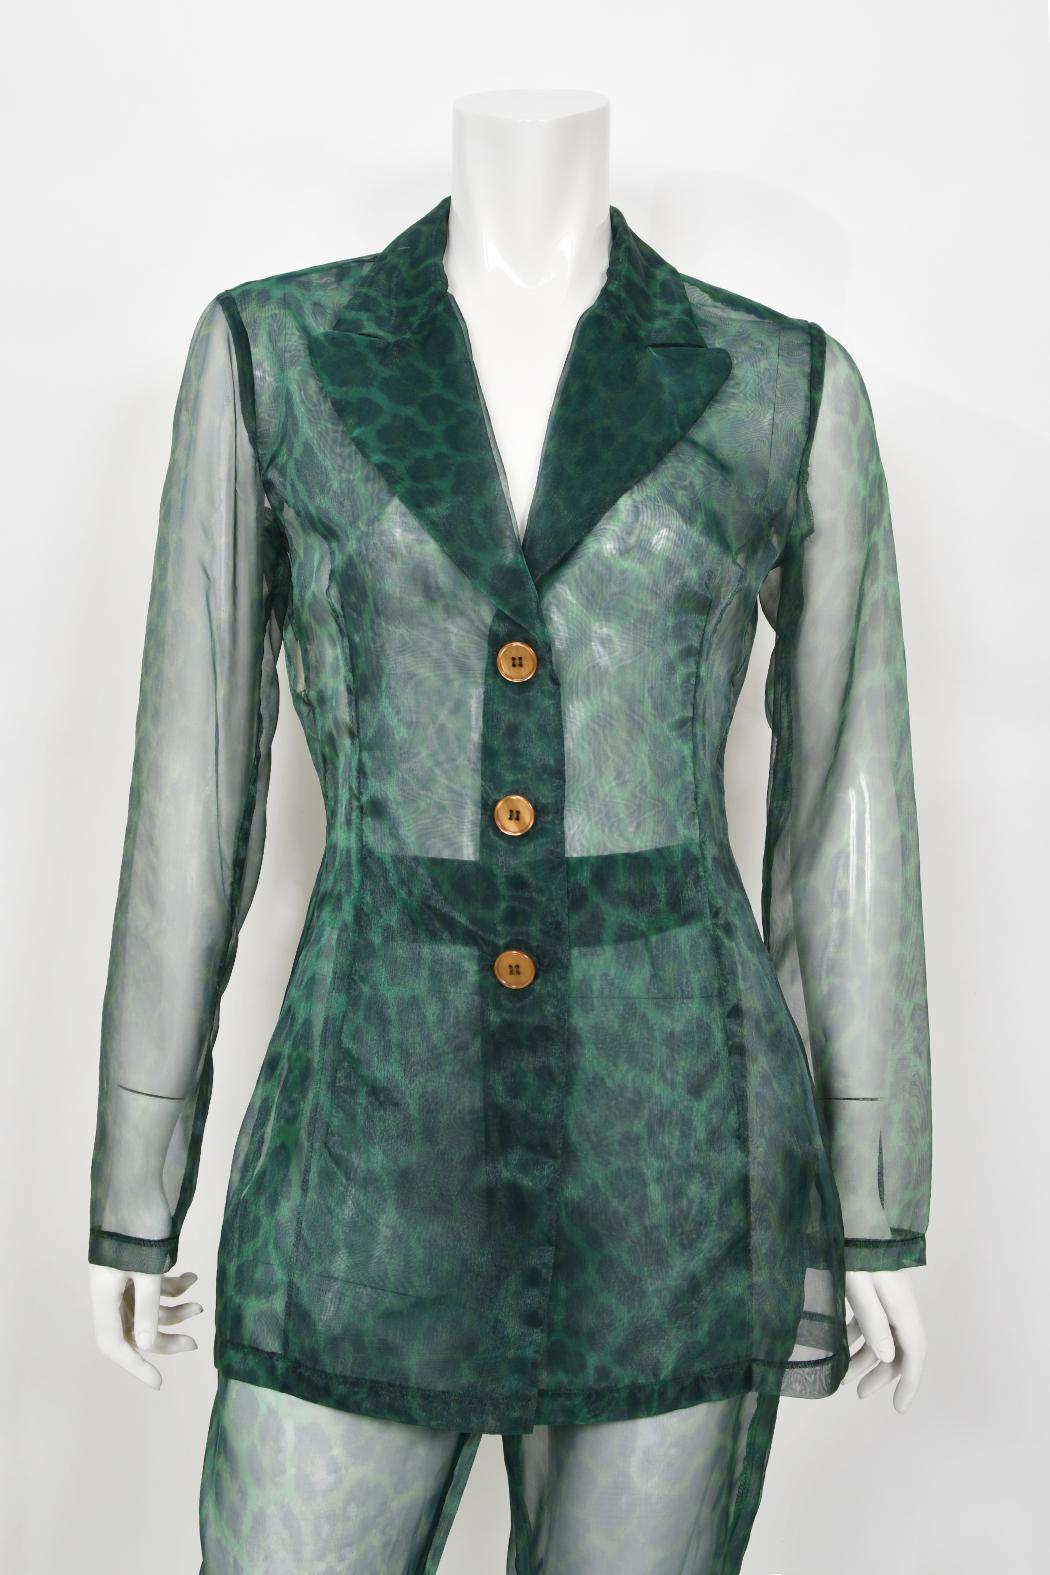 Rarissime et incroyable combinaison pantalon à imprimé léopard vert transparent de Rifat Ozbek, datant de sa collection printemps-été 1995. Rifat Ozbek est un créateur de mode turc qui est entré à l'école d'architecture de Liverpool ; il en est